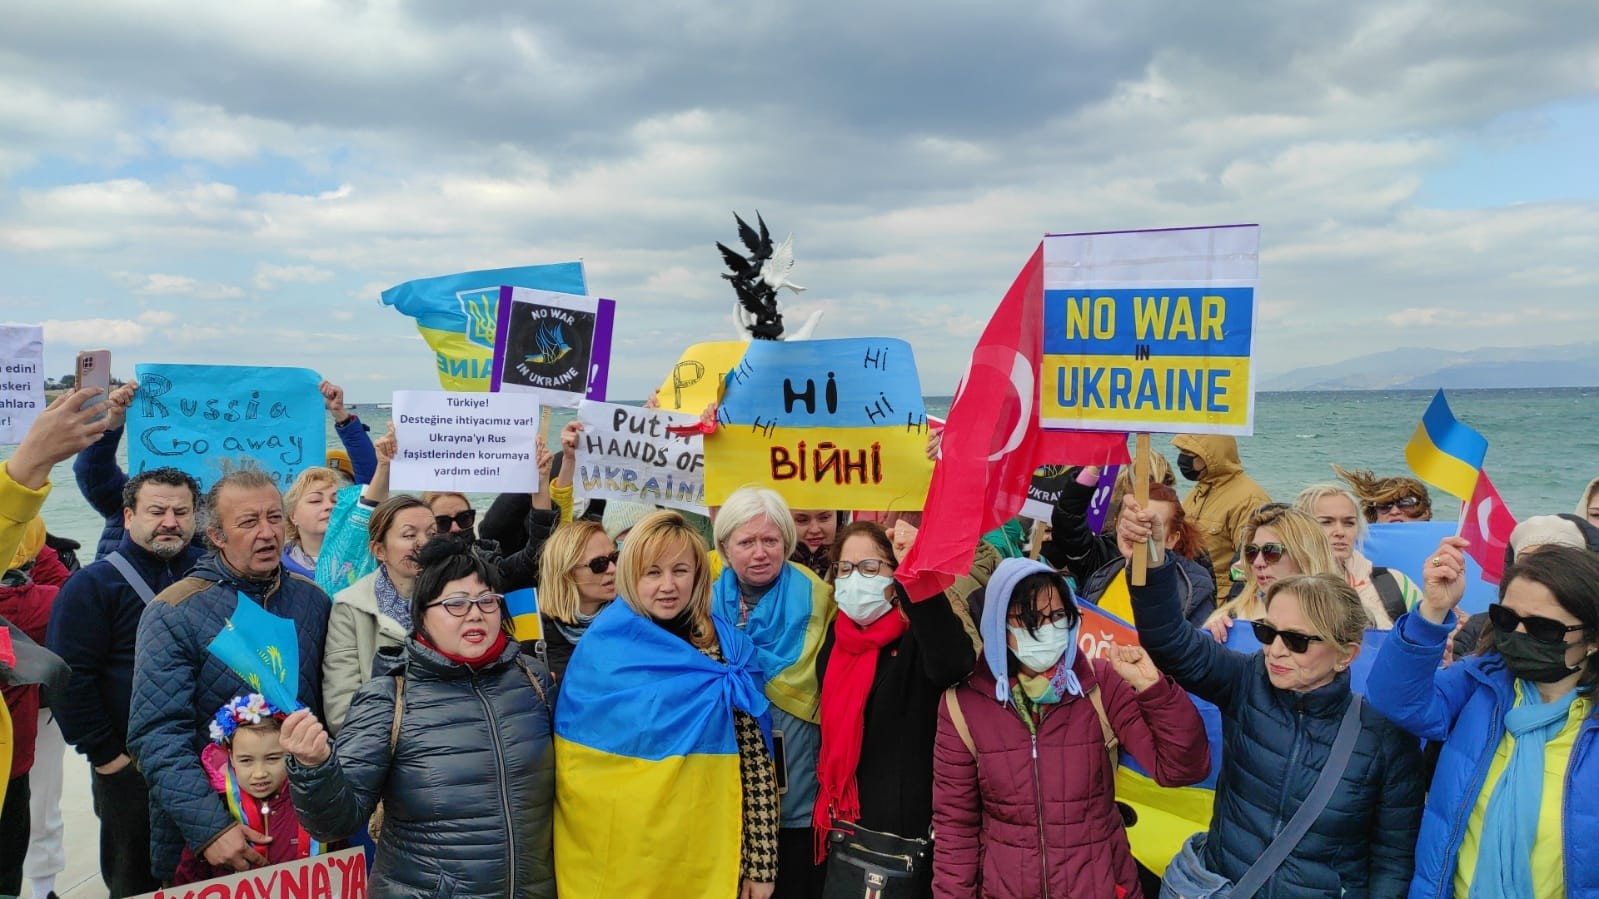 Kuşadası’nda Ukraynalılar, Rusya’yı protesto etti #aydin